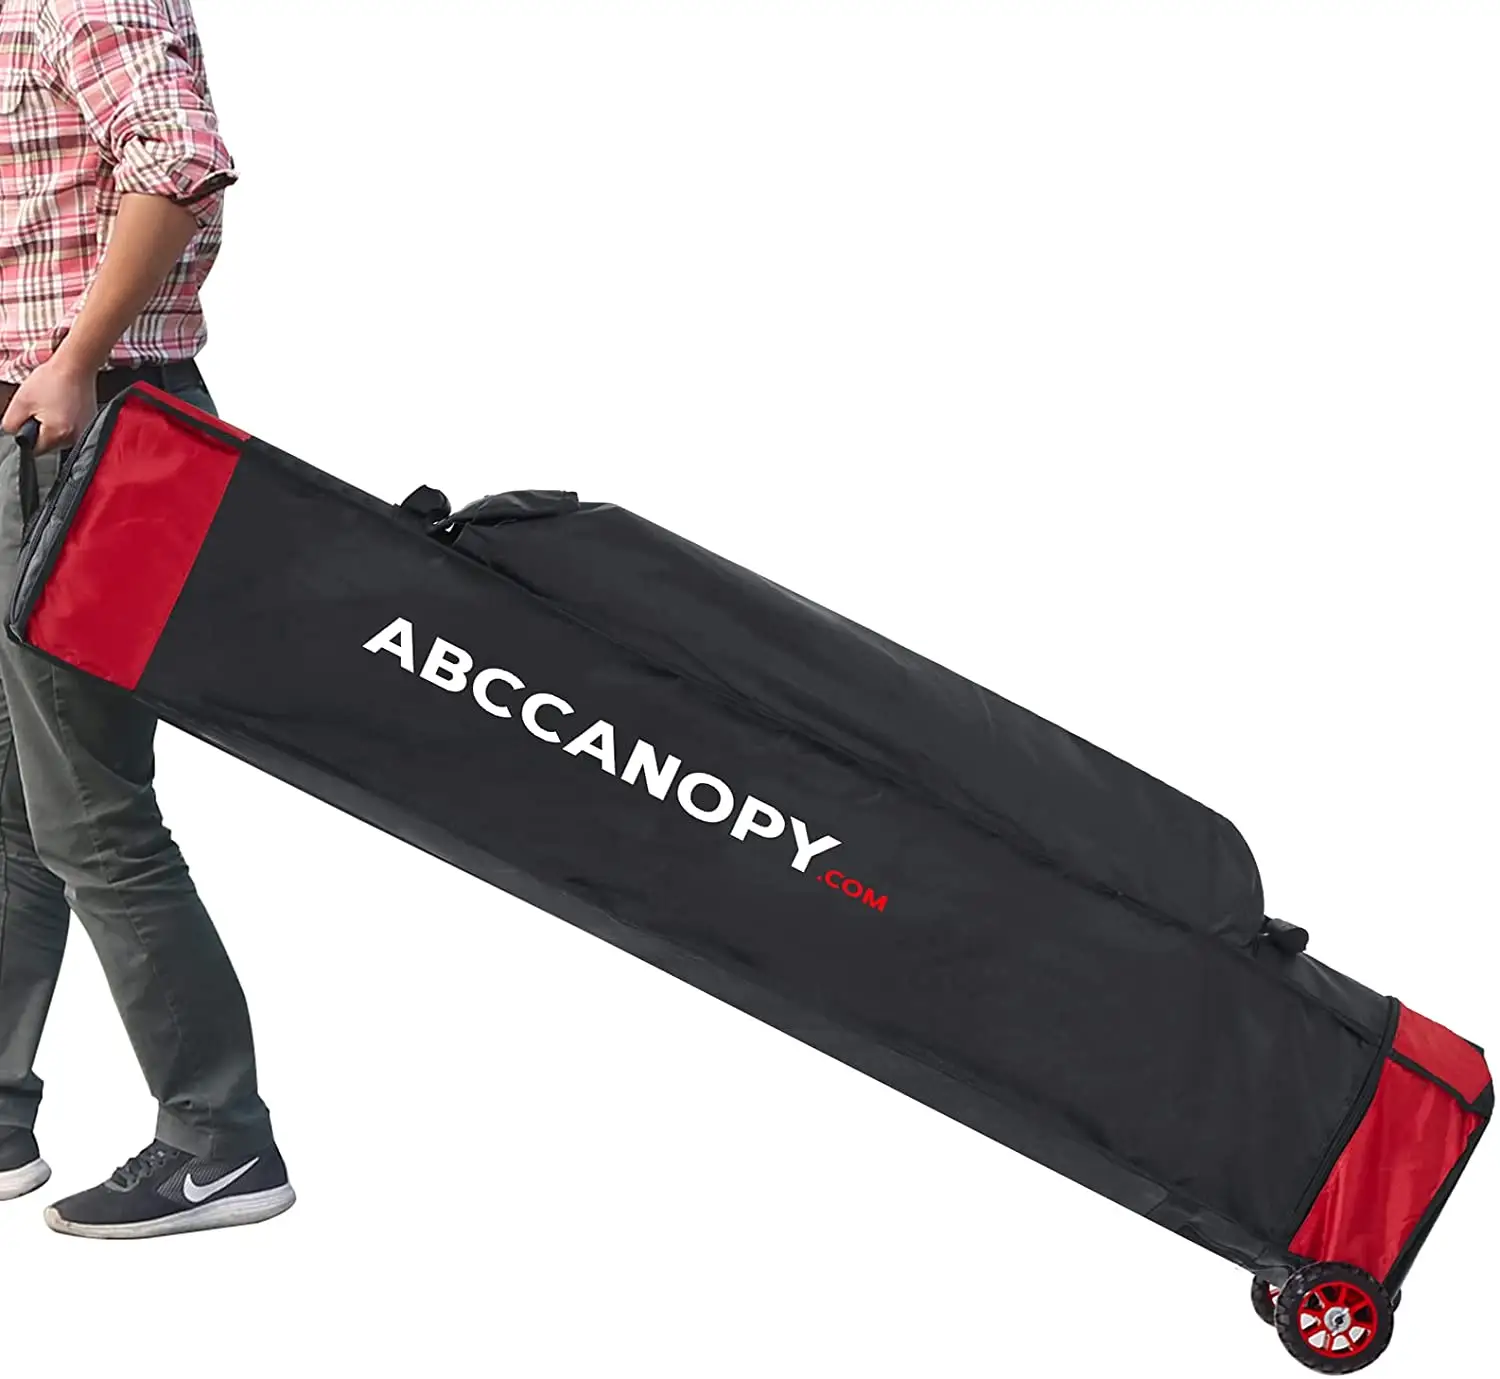 Abccanopy bolsa universal 10x15, estojo de tenda com cobertura, somente pesada, preta